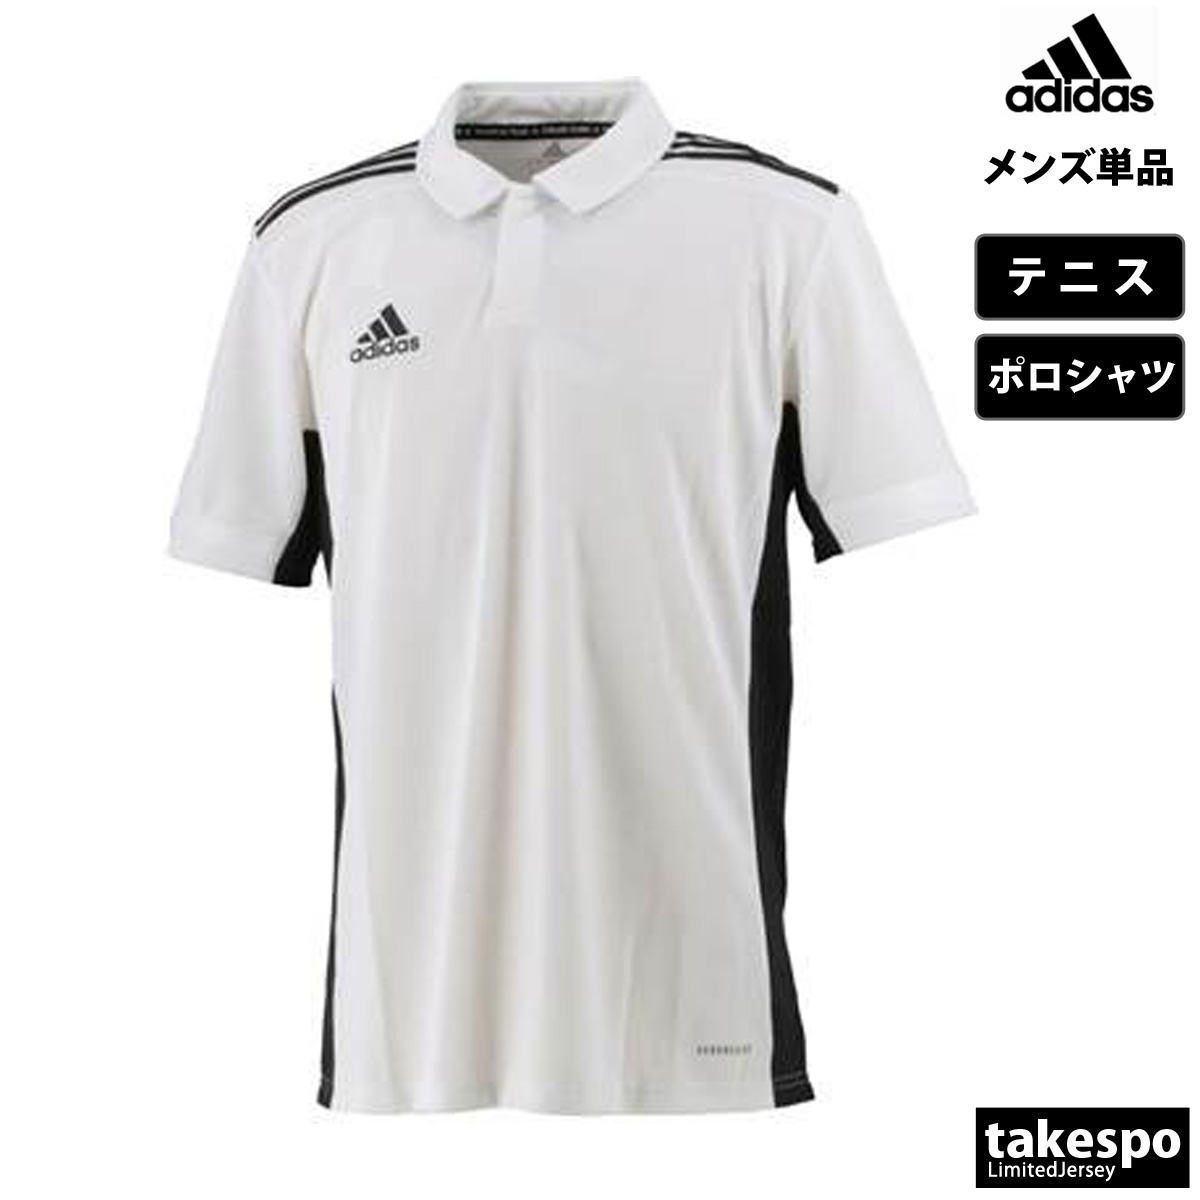 アディダス ポロシャツ メンズ 上 adidas チーム テニス ゲームシャツ 3ストライプス DW...